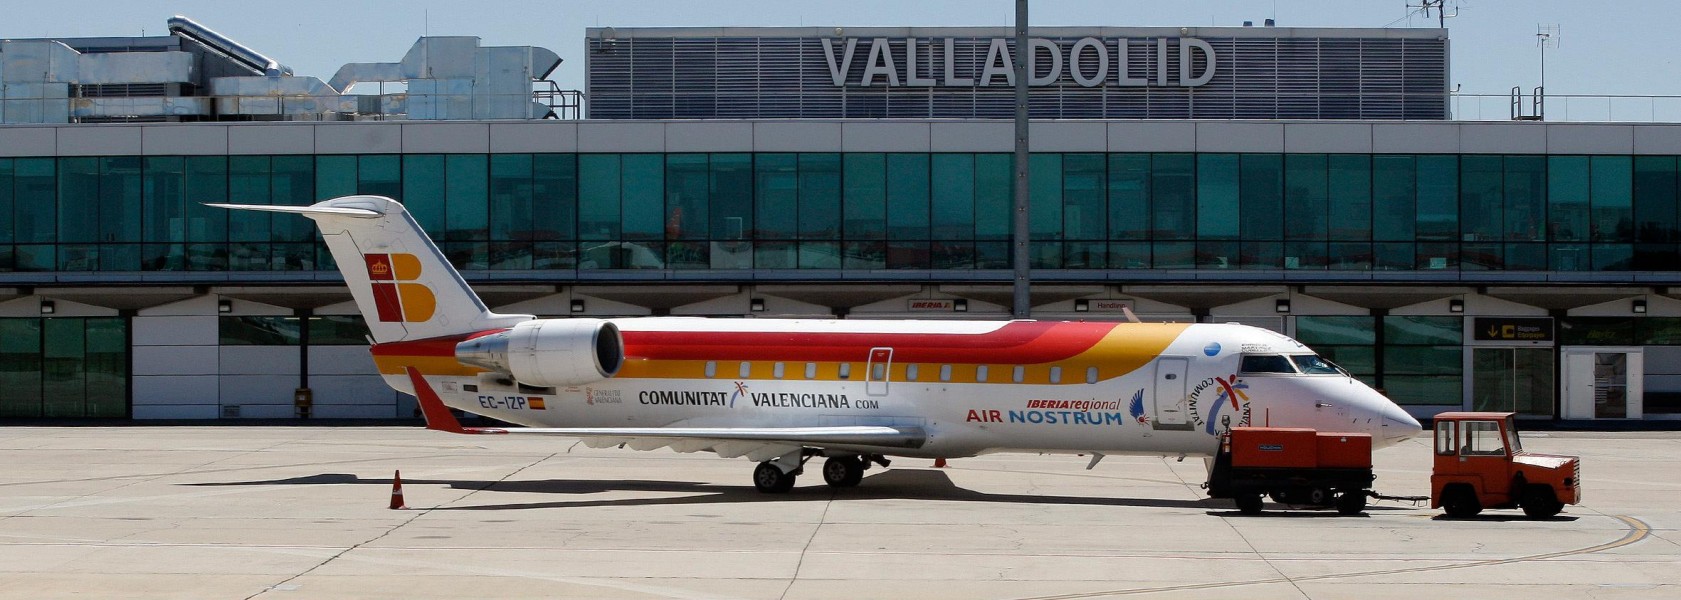 Terminal del Aeropuerto de Valladolid-Villanubla